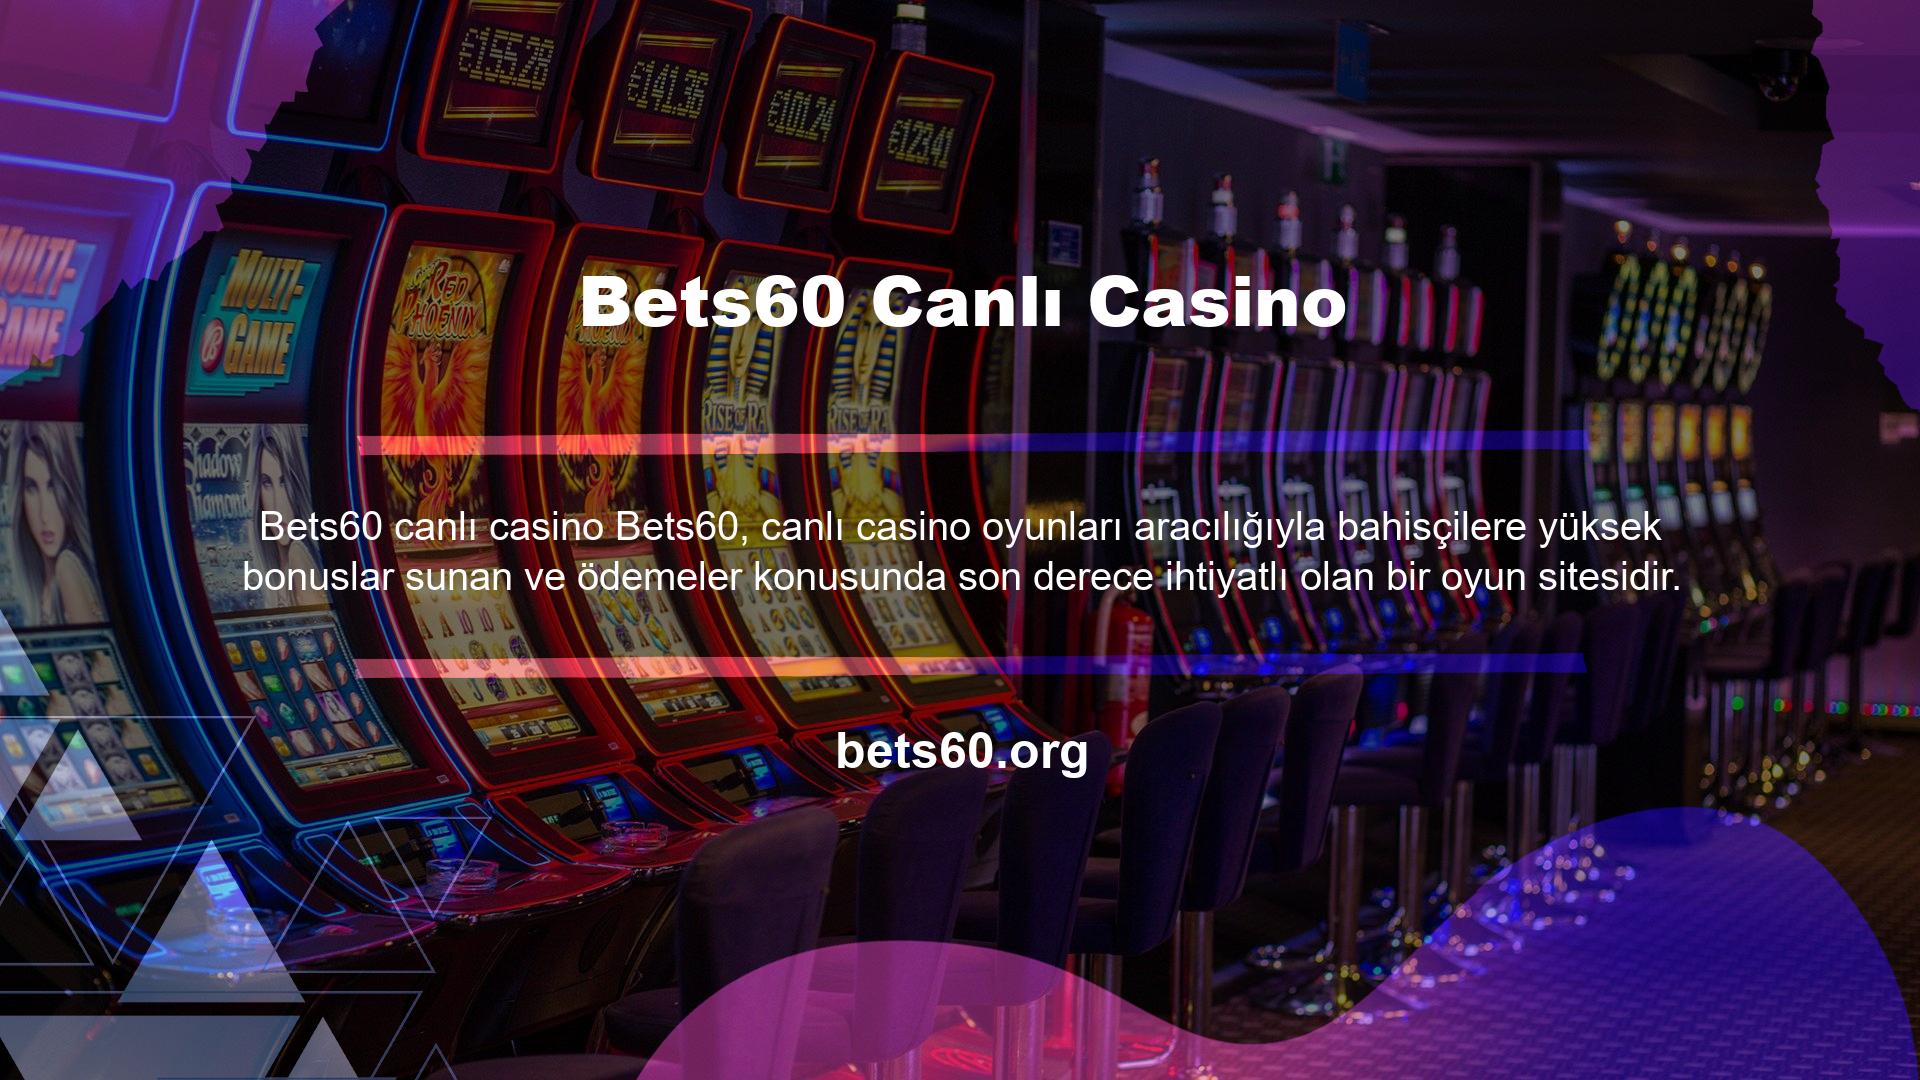 Şirket, dünyanın en güvenilir canlı casino sitelerinden biridir